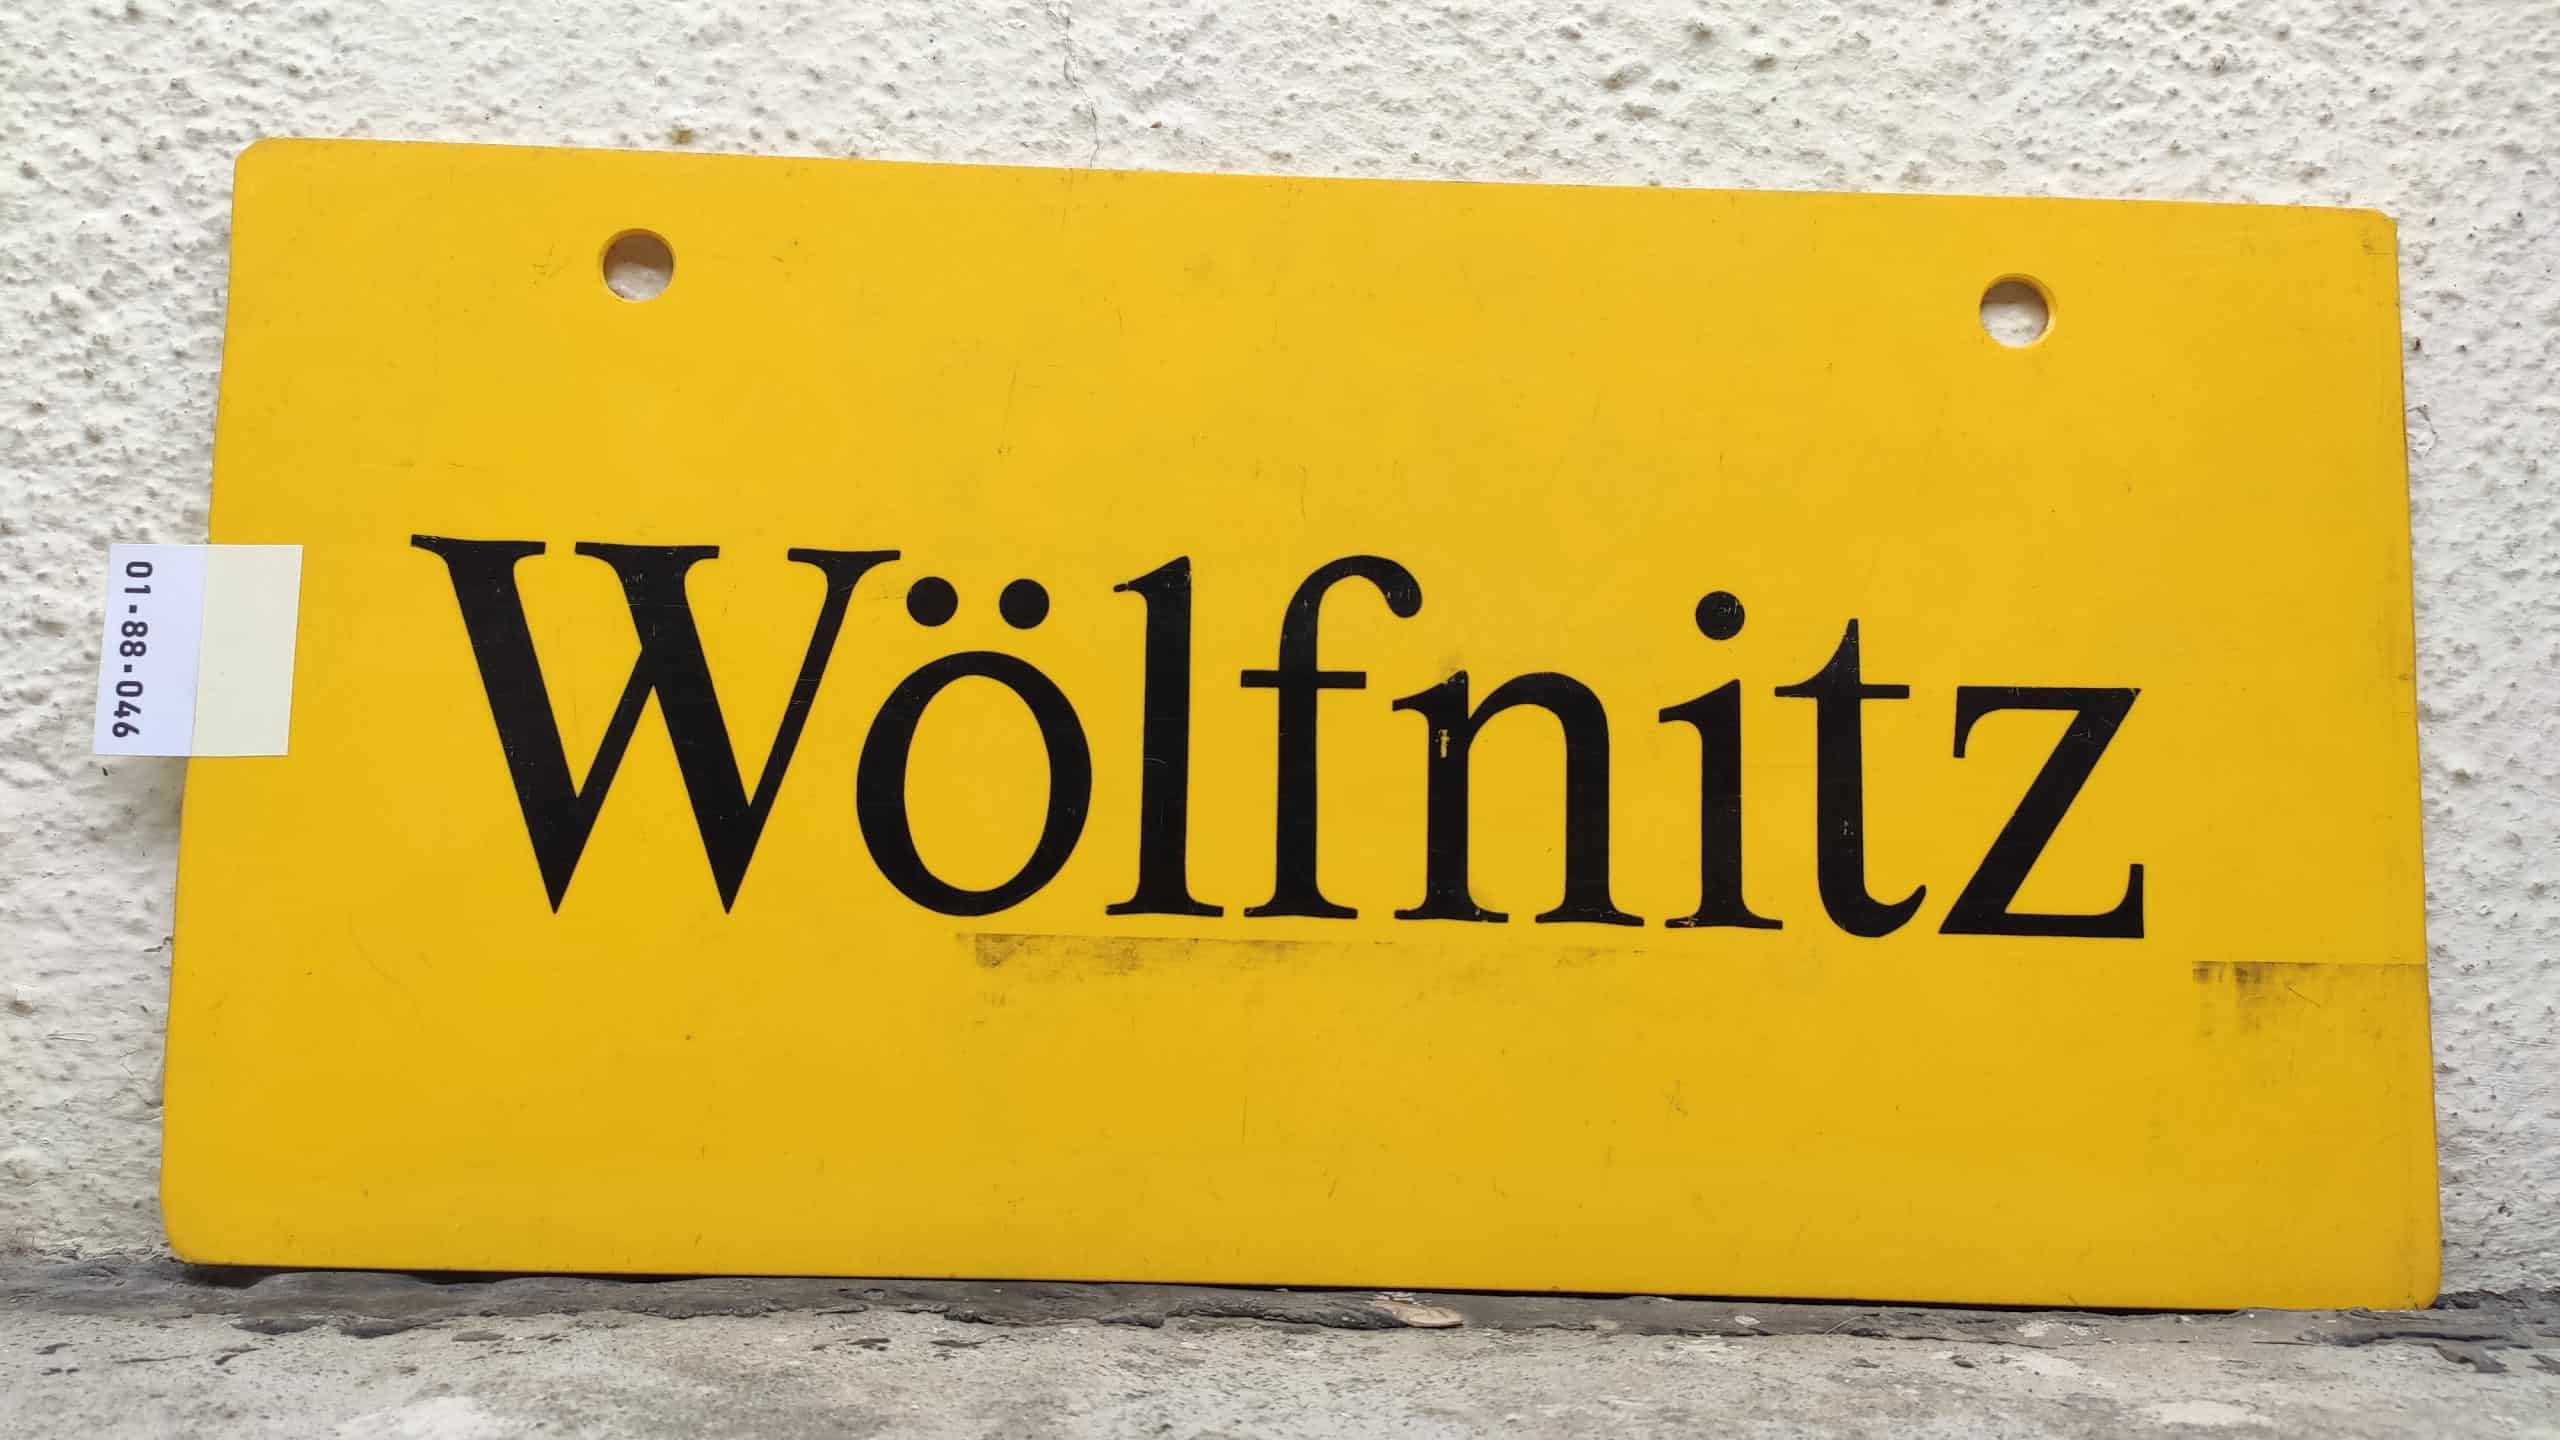 Wölfnitz